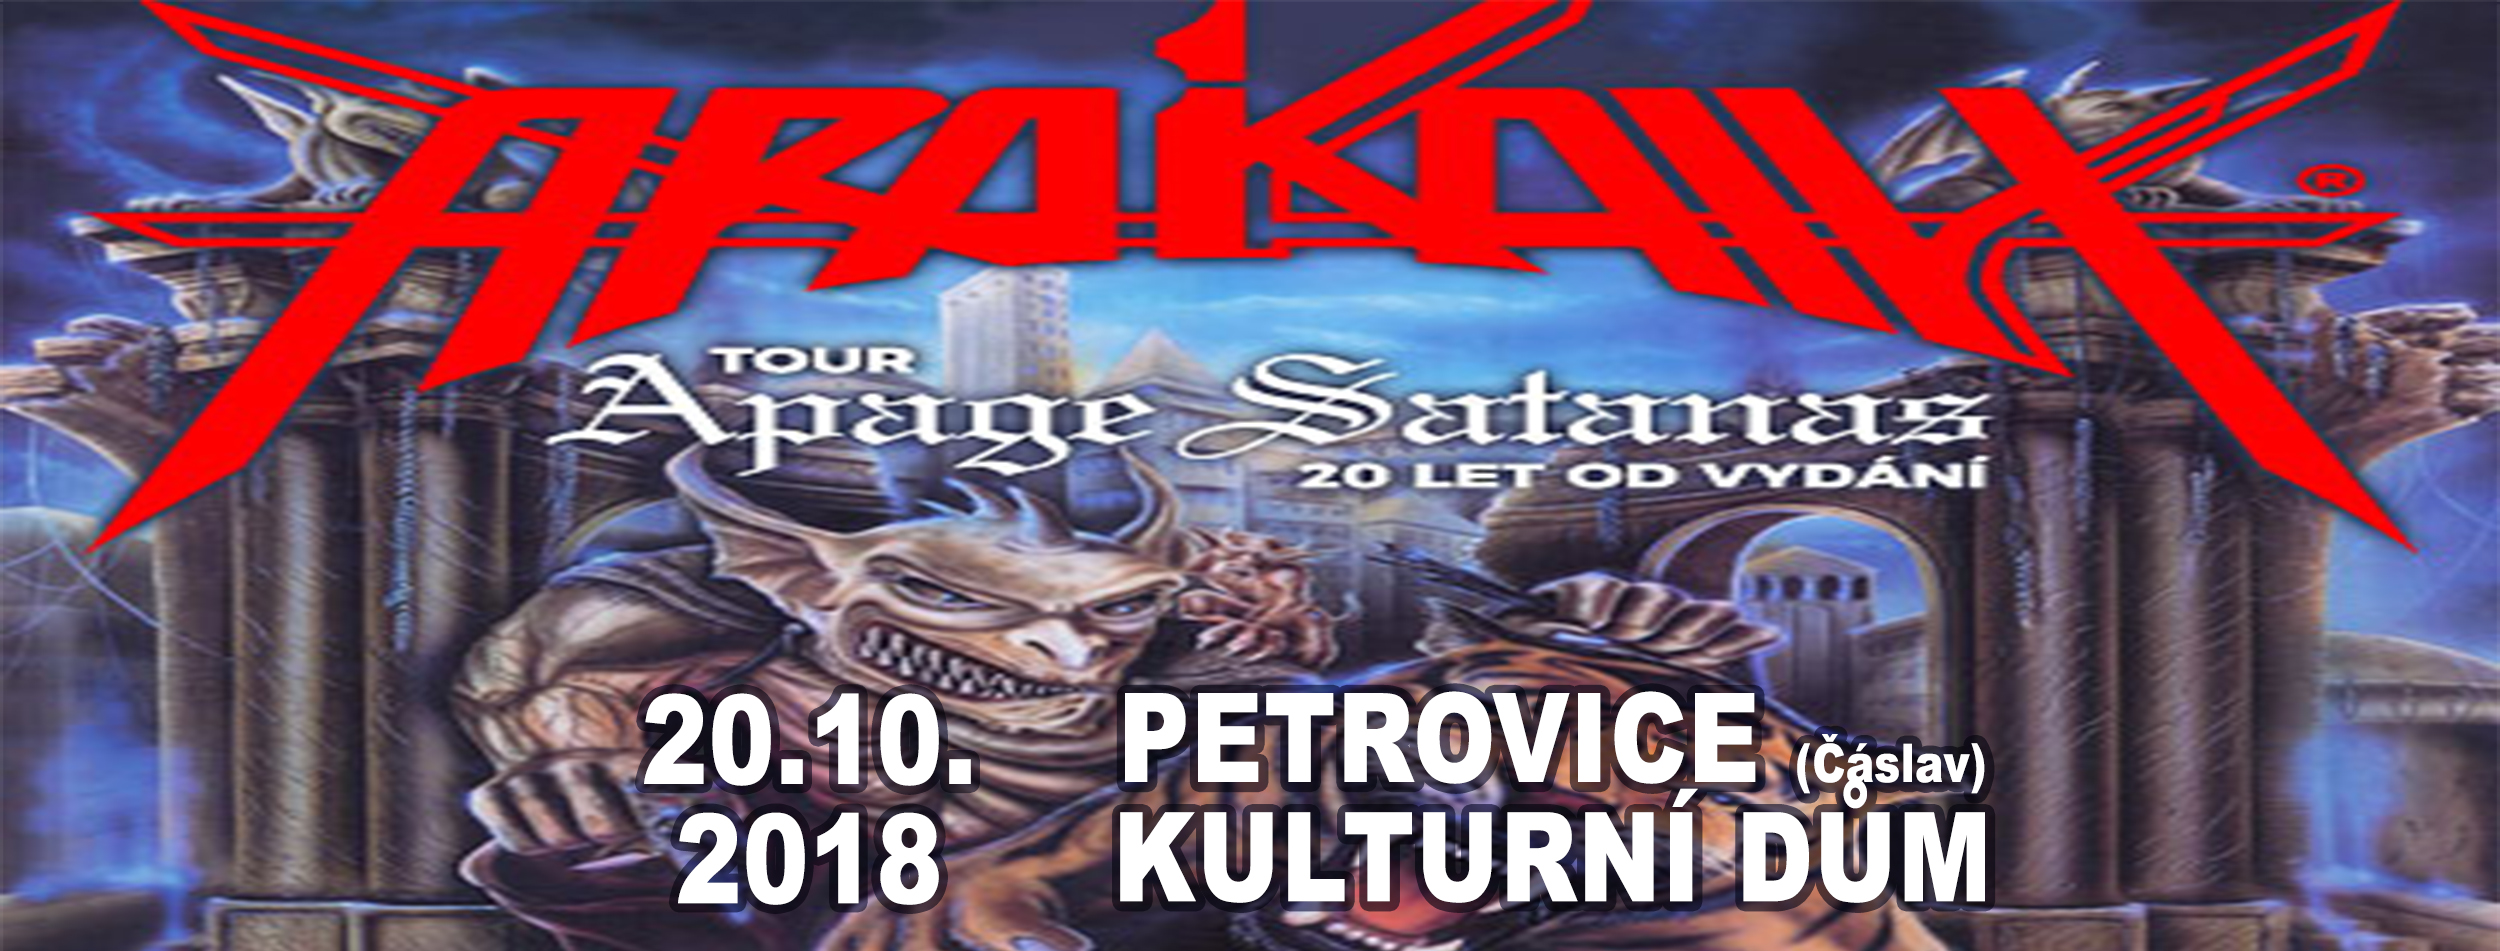 ZRUŠENO: Arakain Petrovice Apage Satanas Tour 2018